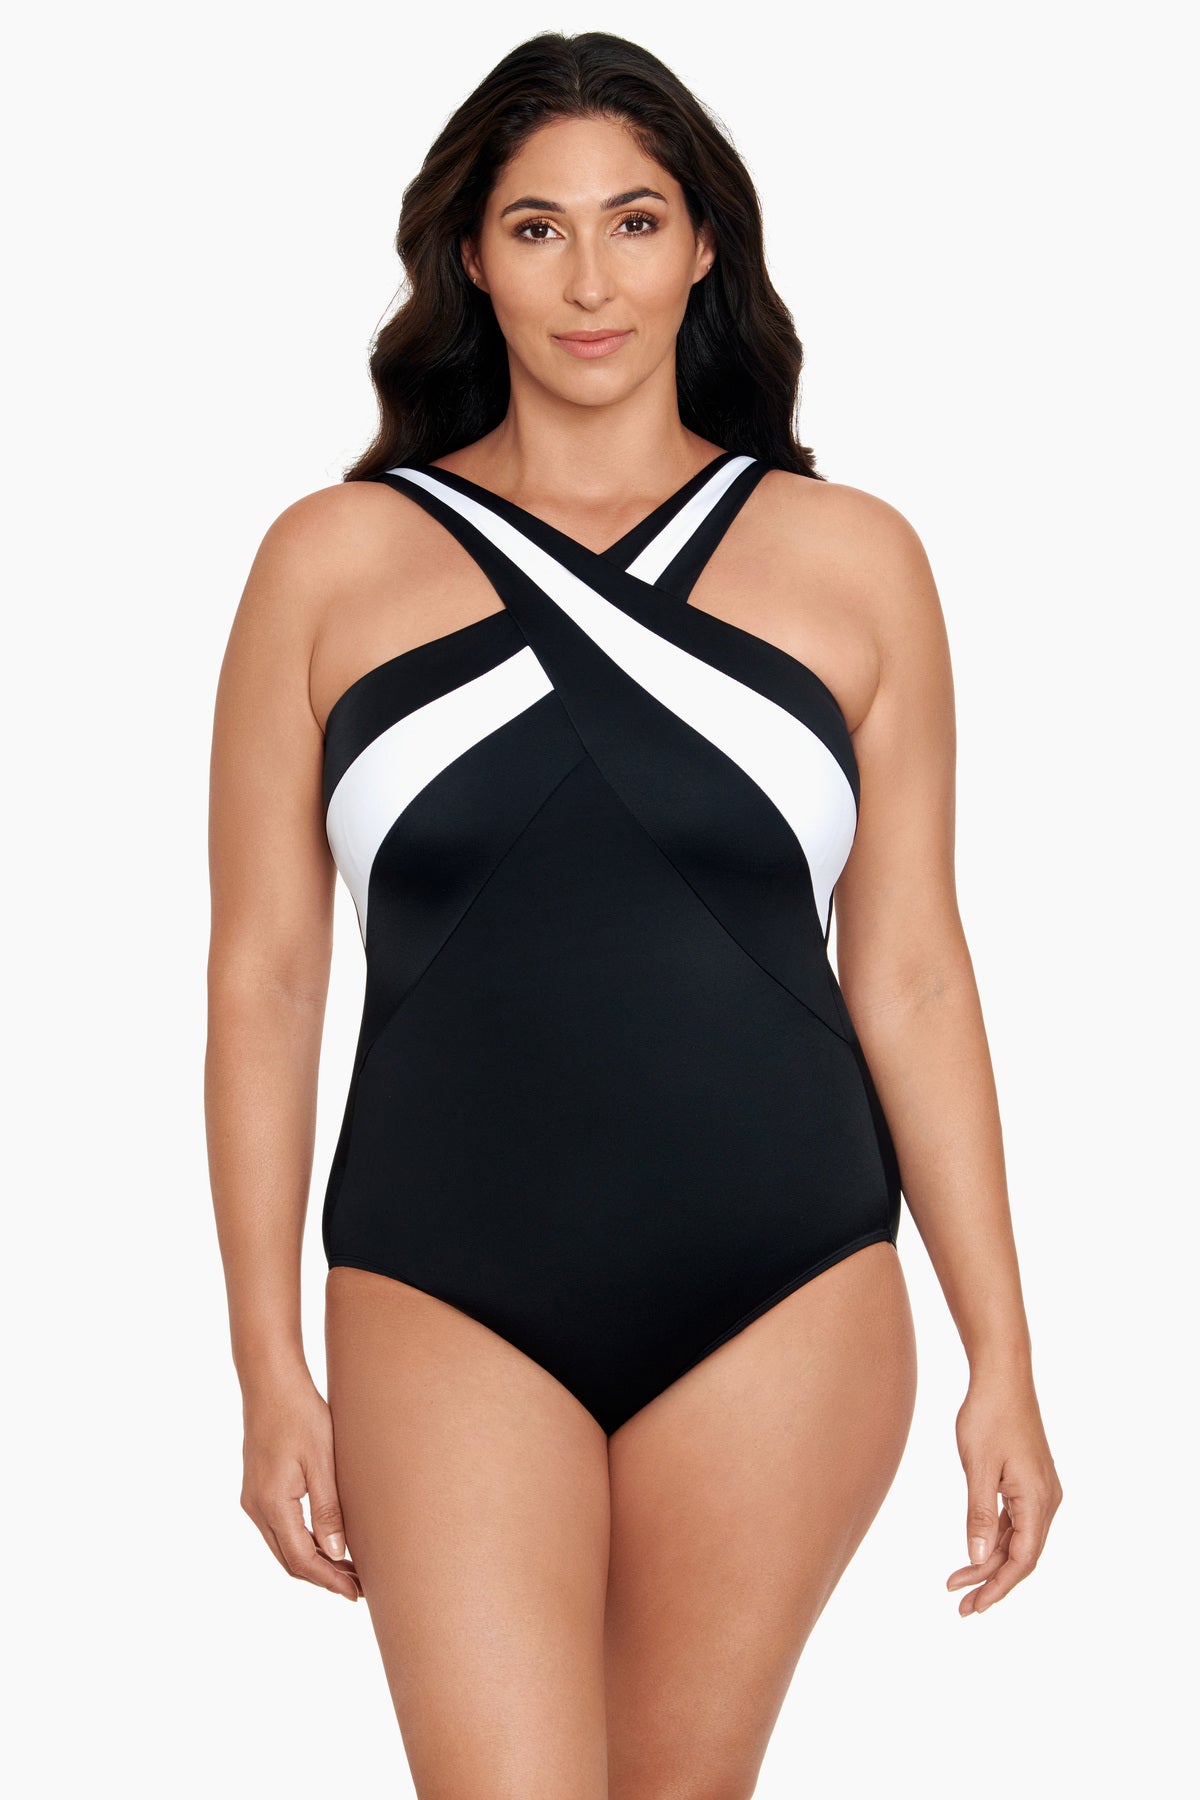 Robby Len Women's One Piece Swimsuit Size 14 Built In Bra NWOT